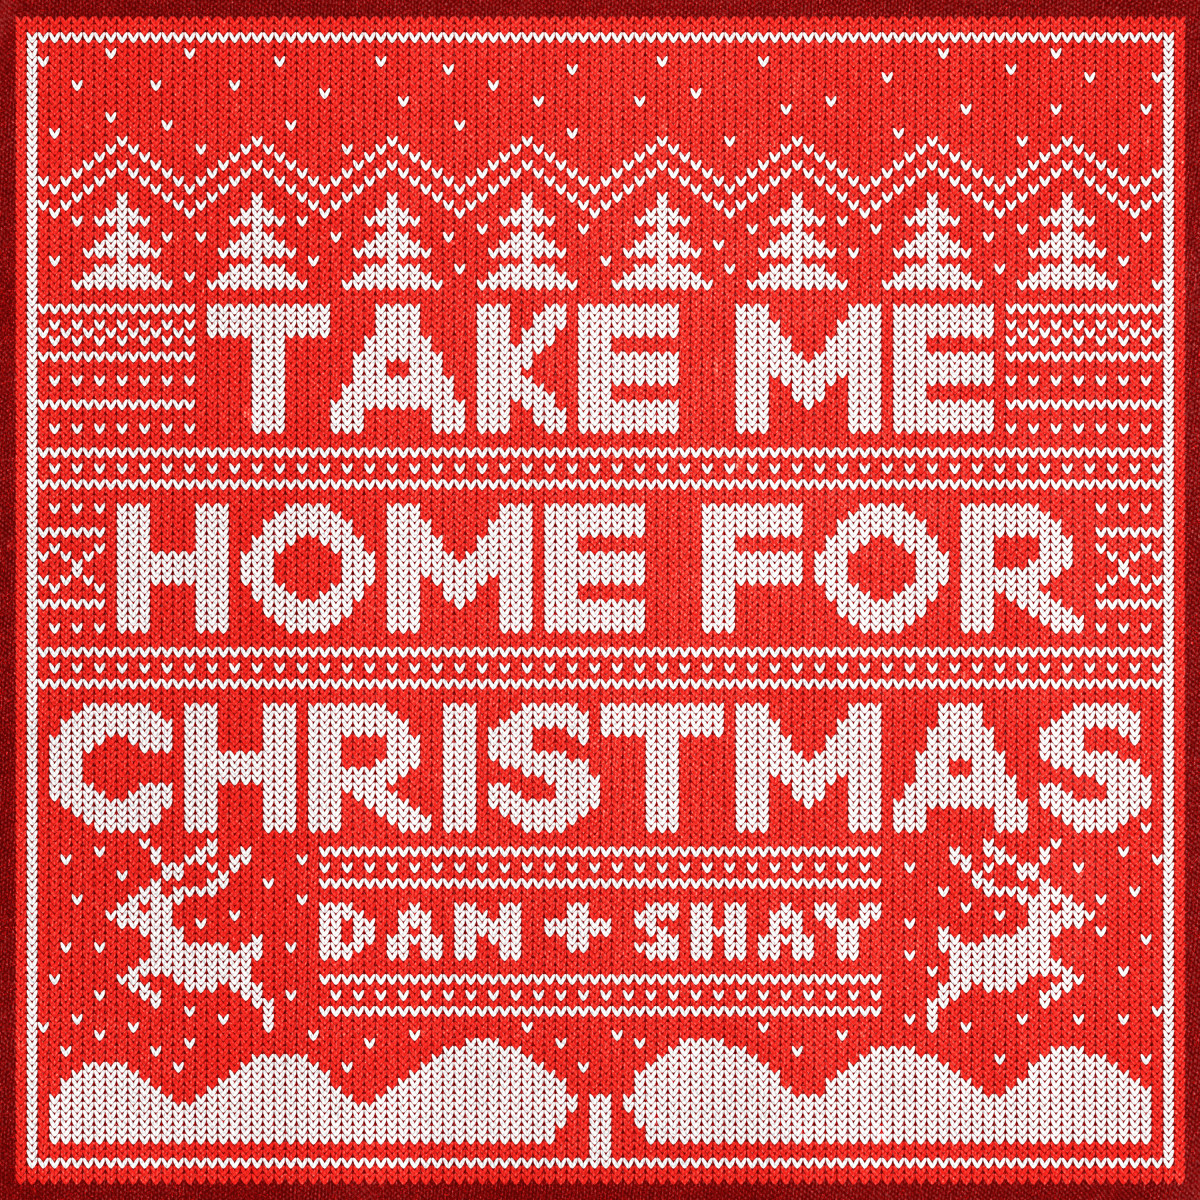 Dan + Shay - Take me home for Christmas